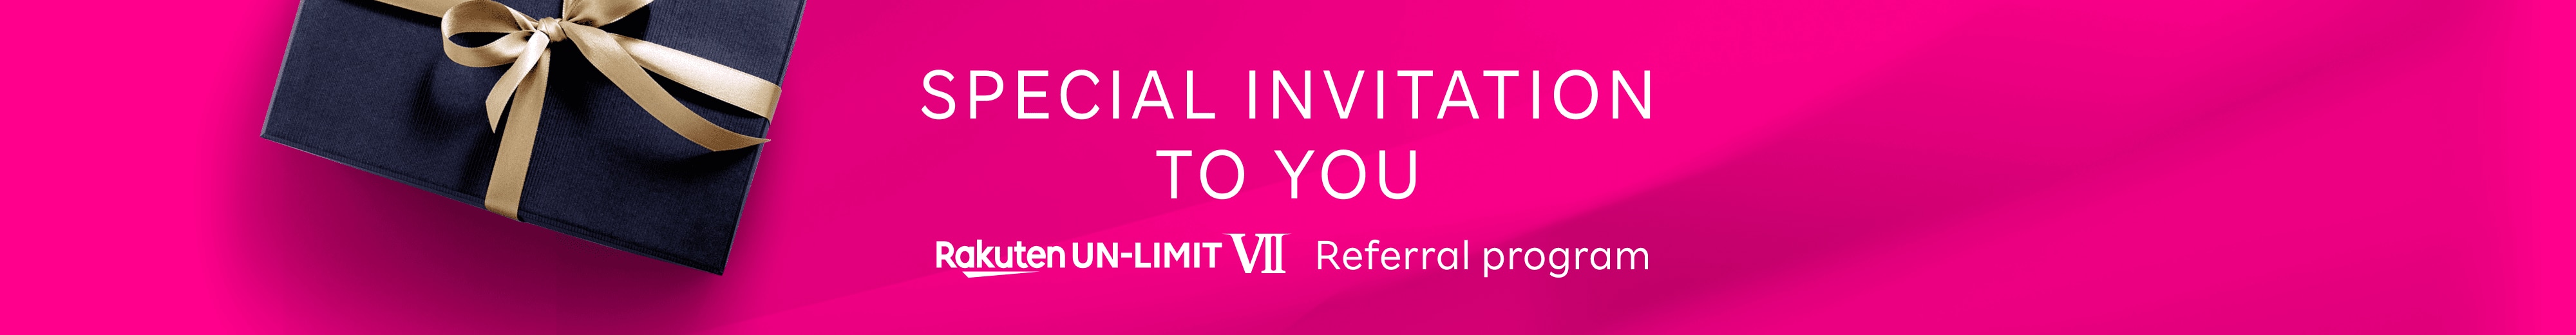 SPECIAL INVITATION TO YOU Rakuten UN-LIMIT VII Referral program